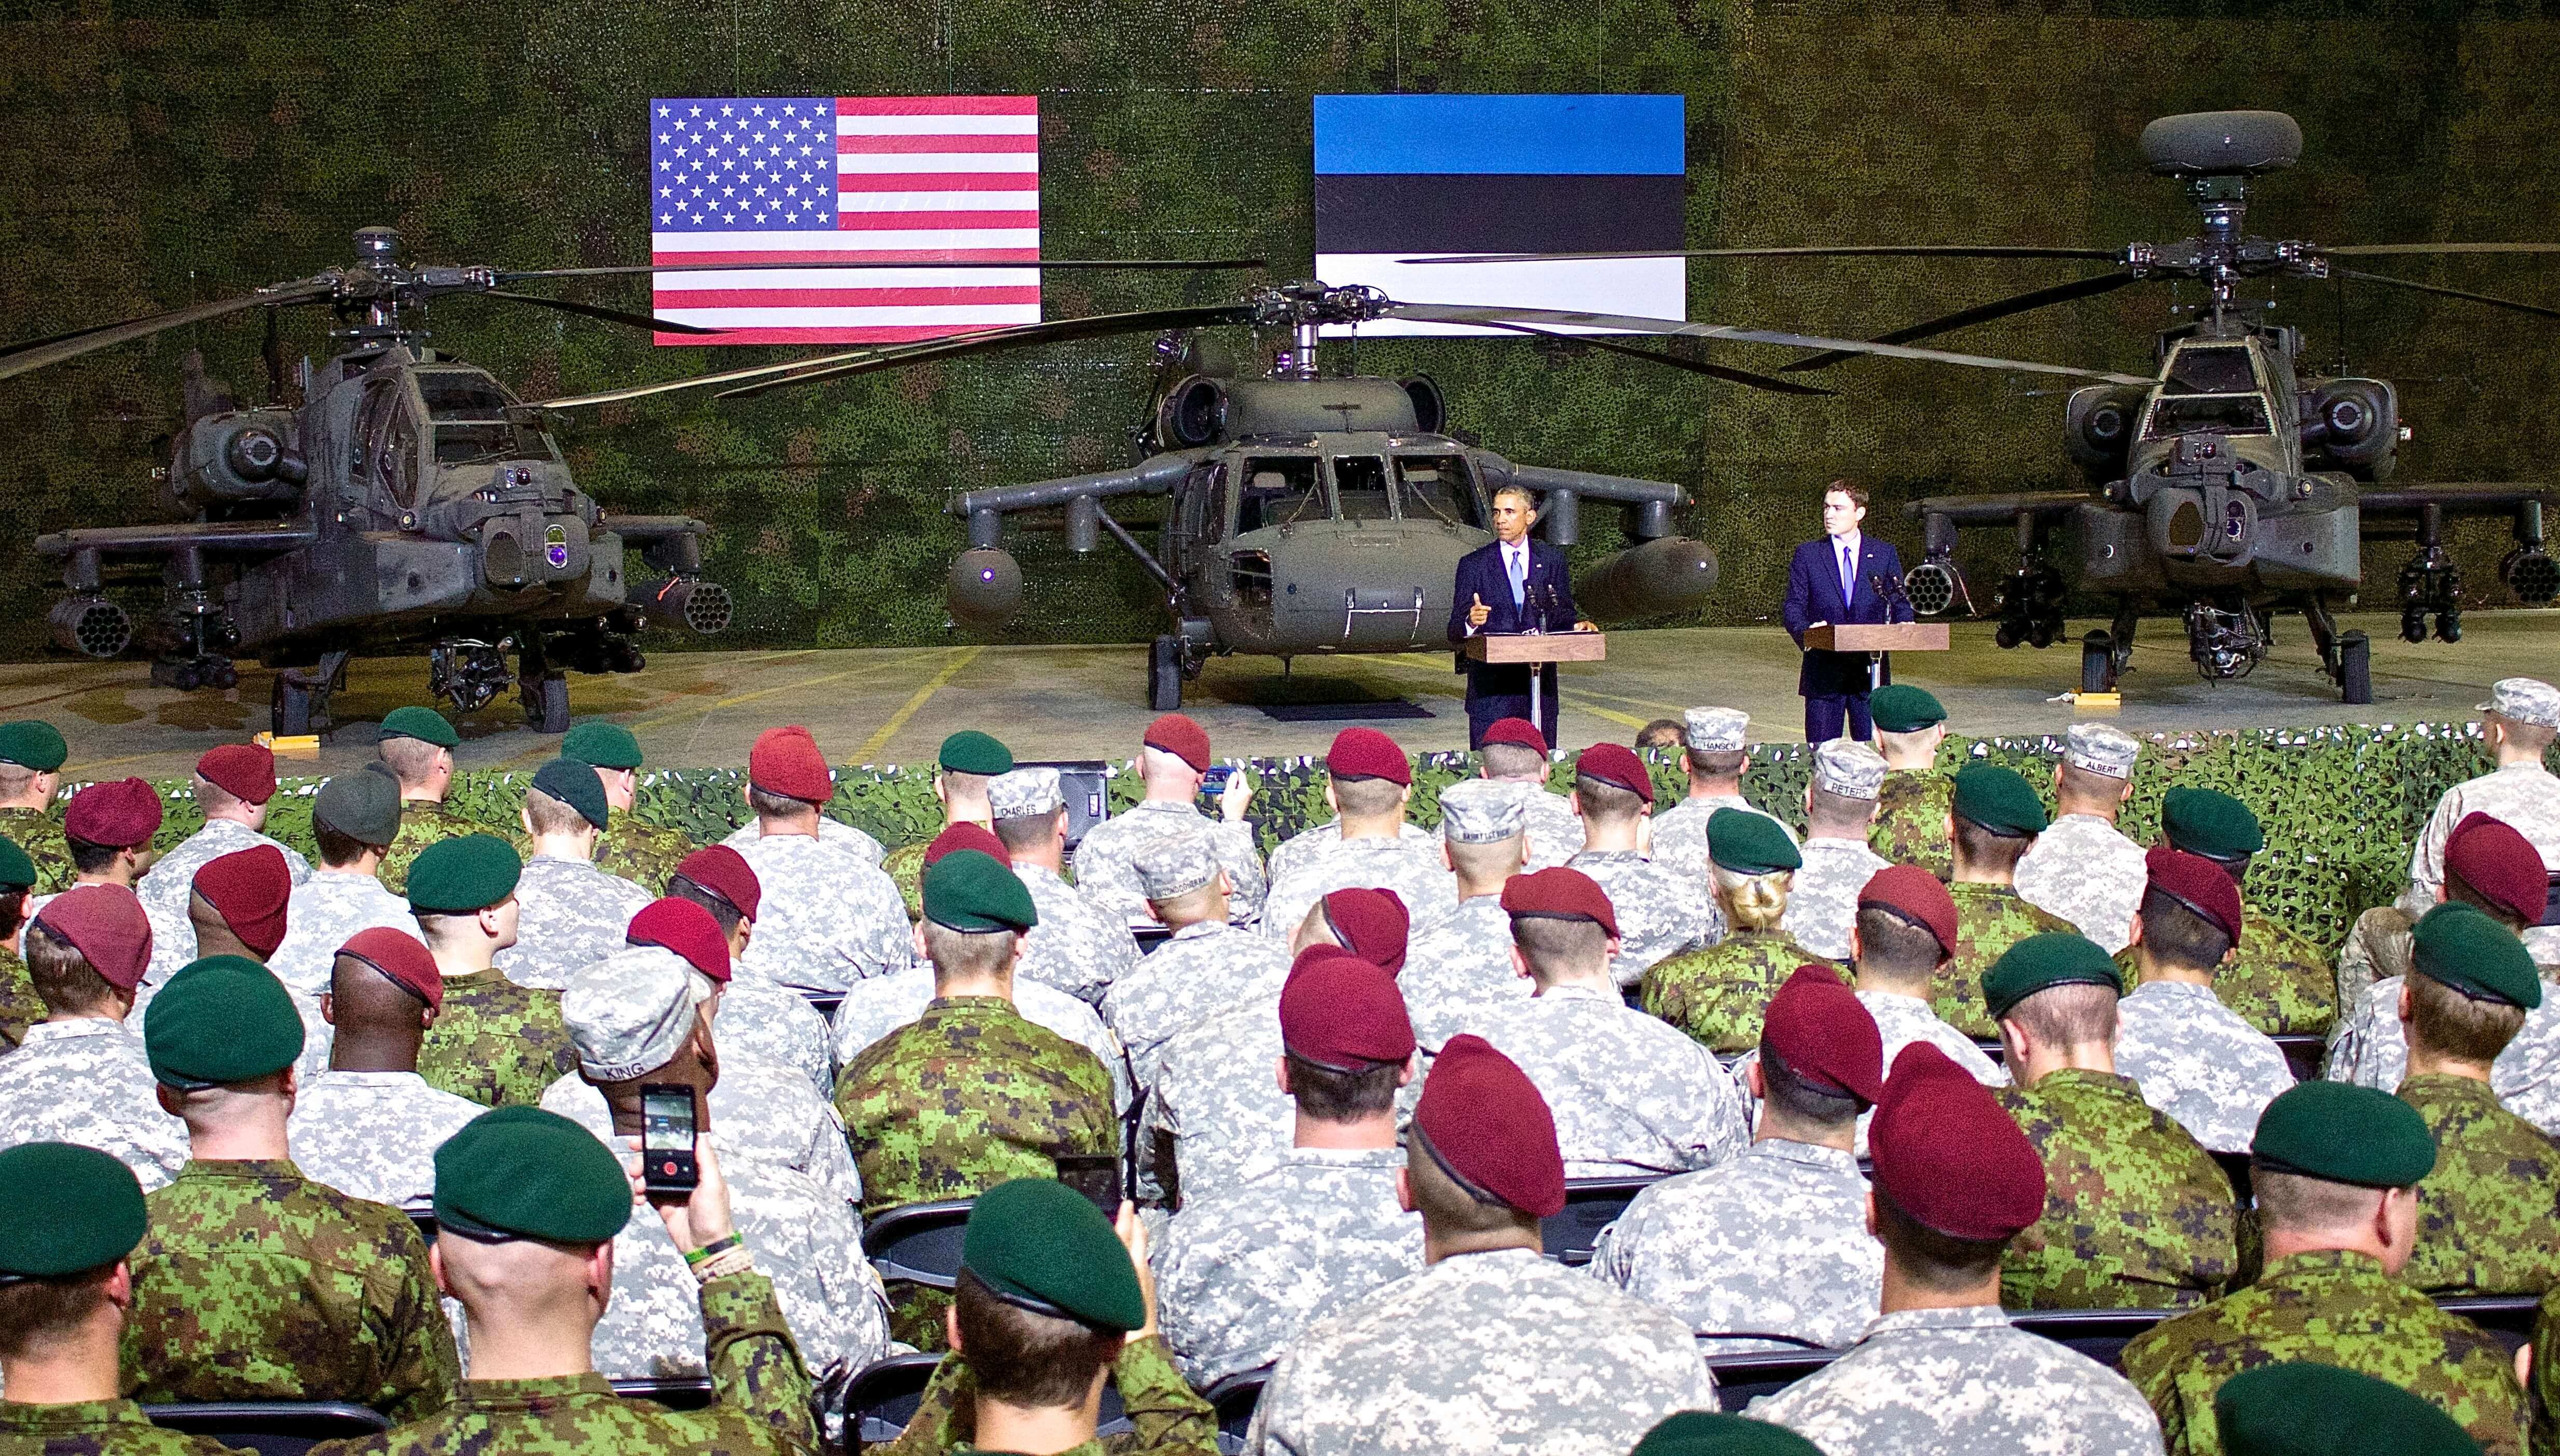 De Baltische staten waaronder Estland zijn voor de Verenigde Staten van groot belang als NAVO-partner. Zowel toenmalig president Obama als de toenmalige premier Rõivas (R) erkenden dit in 2014. Bron: Wikimedia Commons